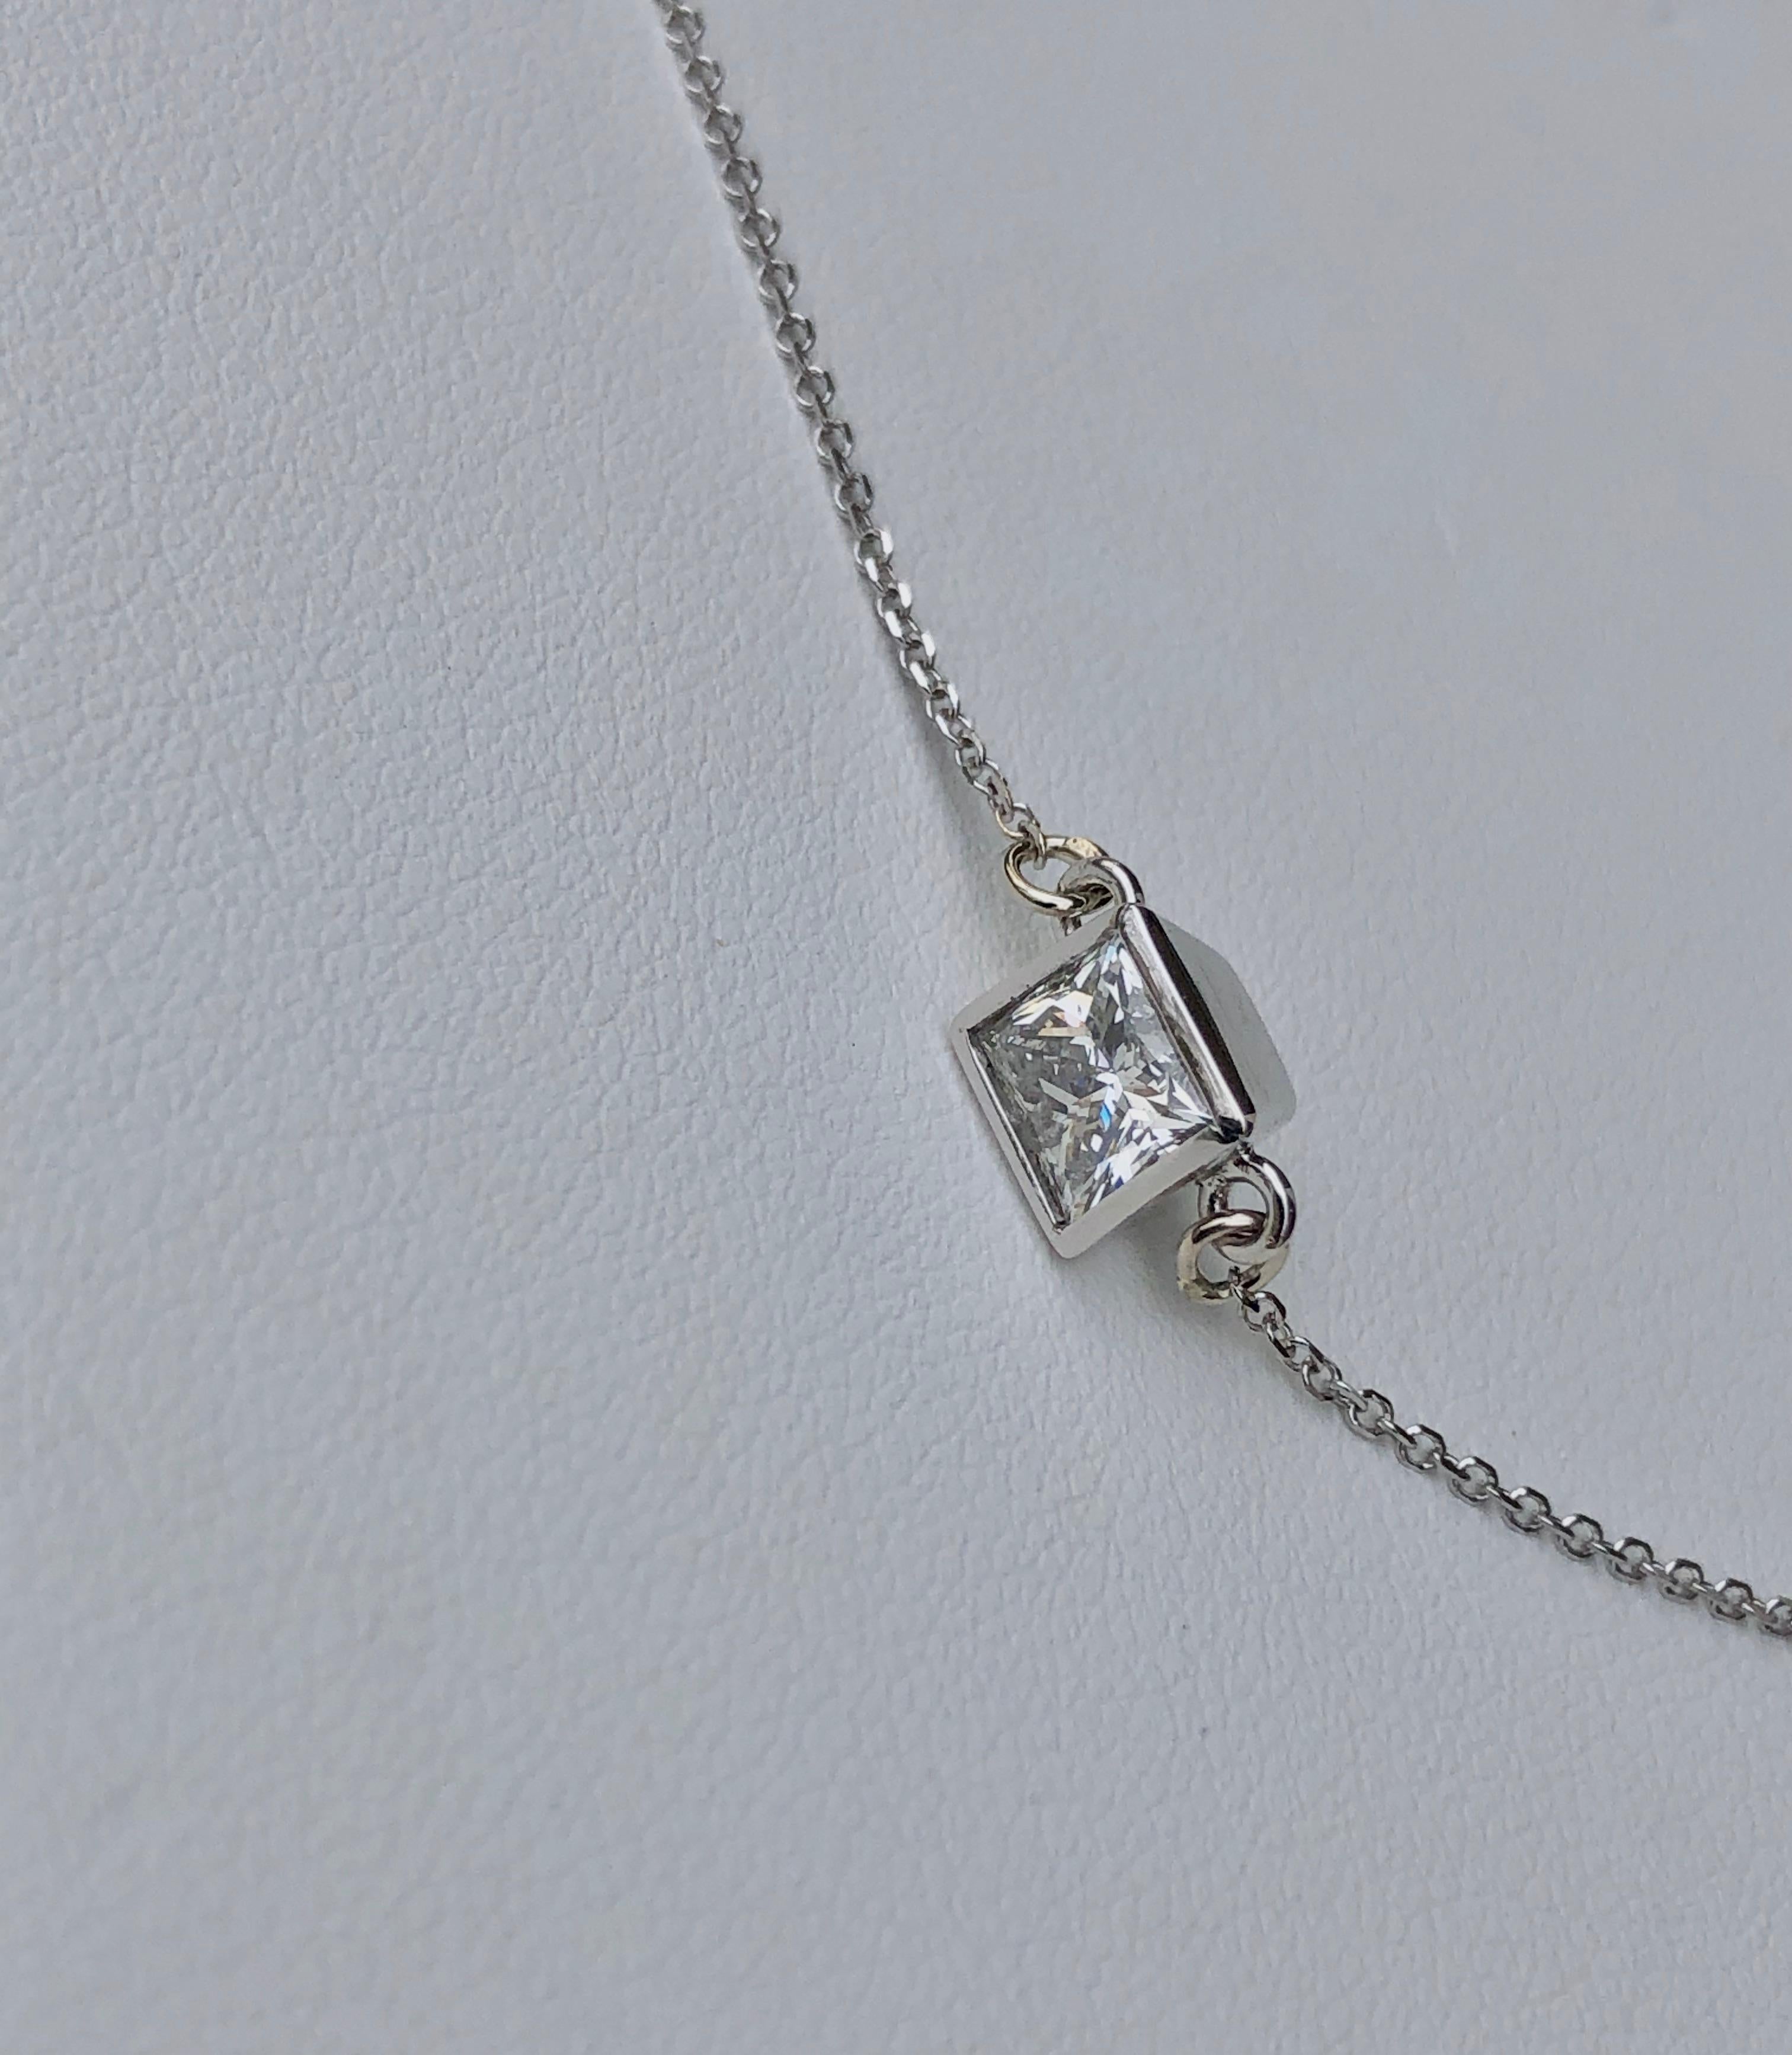 1 carat princess cut diamond necklace